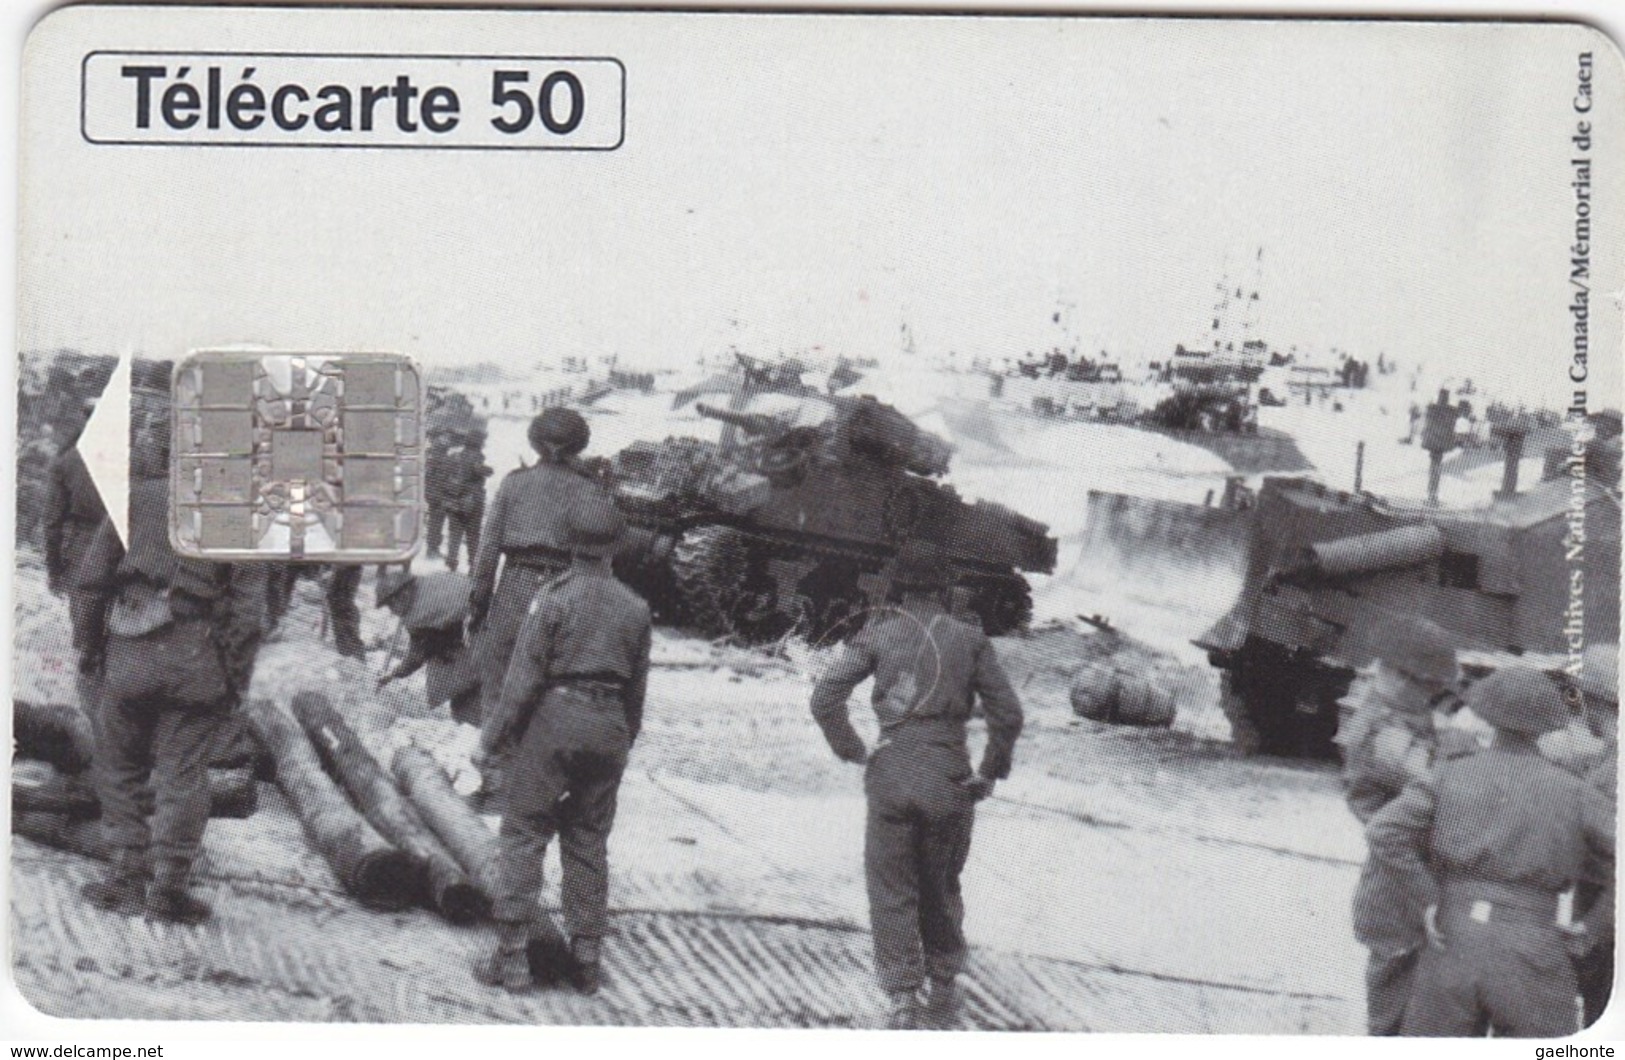 TC118 TÉLÉCARTE 50 UNITÉS - 1944-1994 - 50ème ANNIVERSAIRE DES DEBARQUEMENTS... - COURSEULLE SUR MER 06 JUIN 1944 - Army